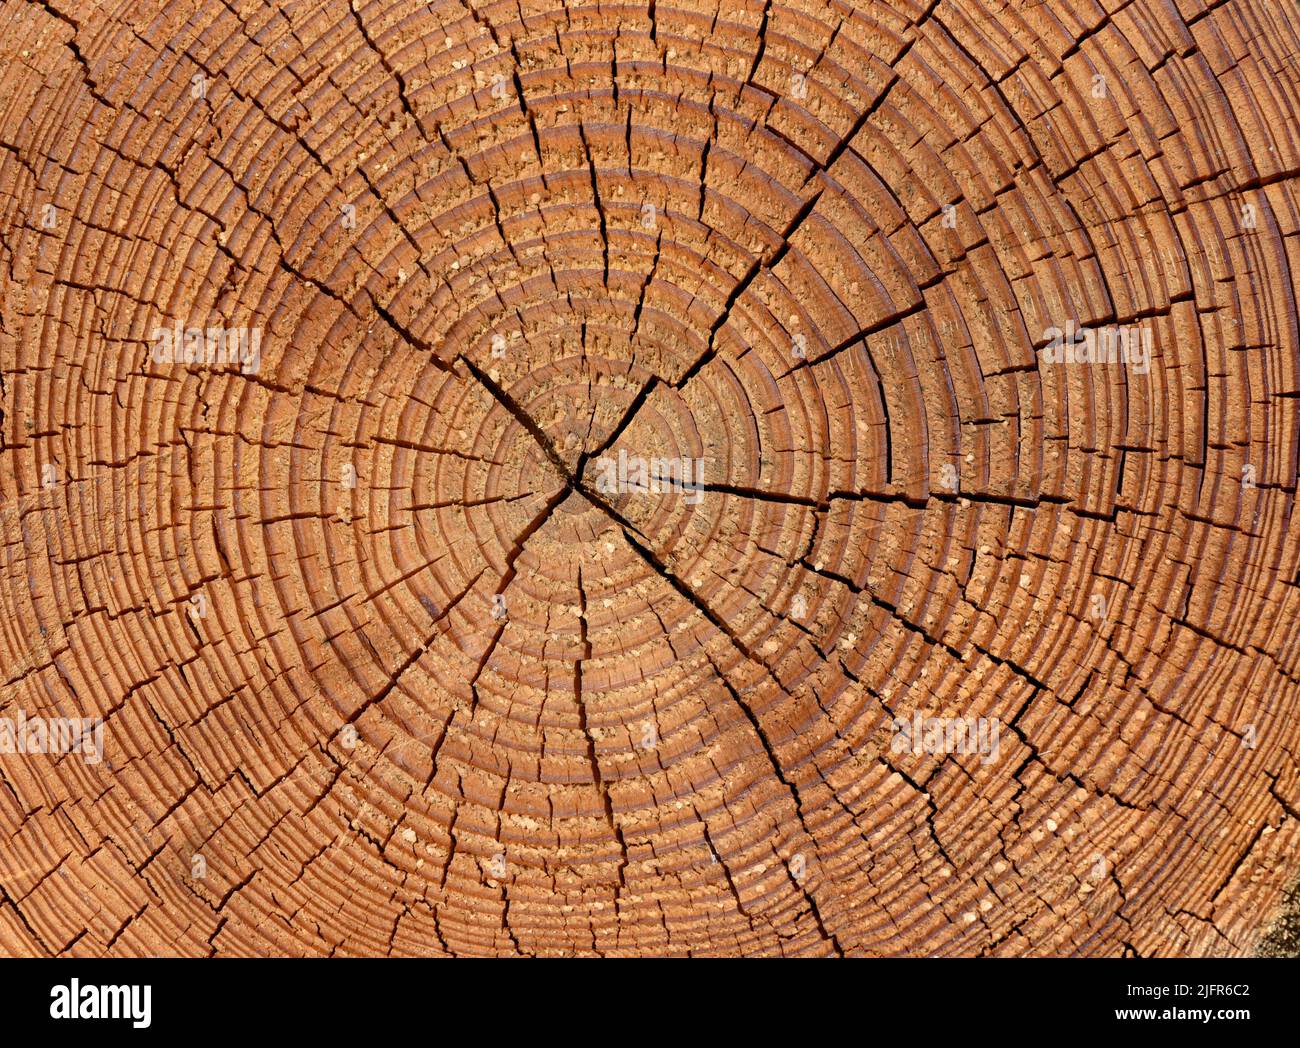 Mohresringe di Wachstumsringe eines Baumes im Querschnitt. Los anillos anuales son los anillos de crecimiento de un árbol en sección transversal. Foto de stock